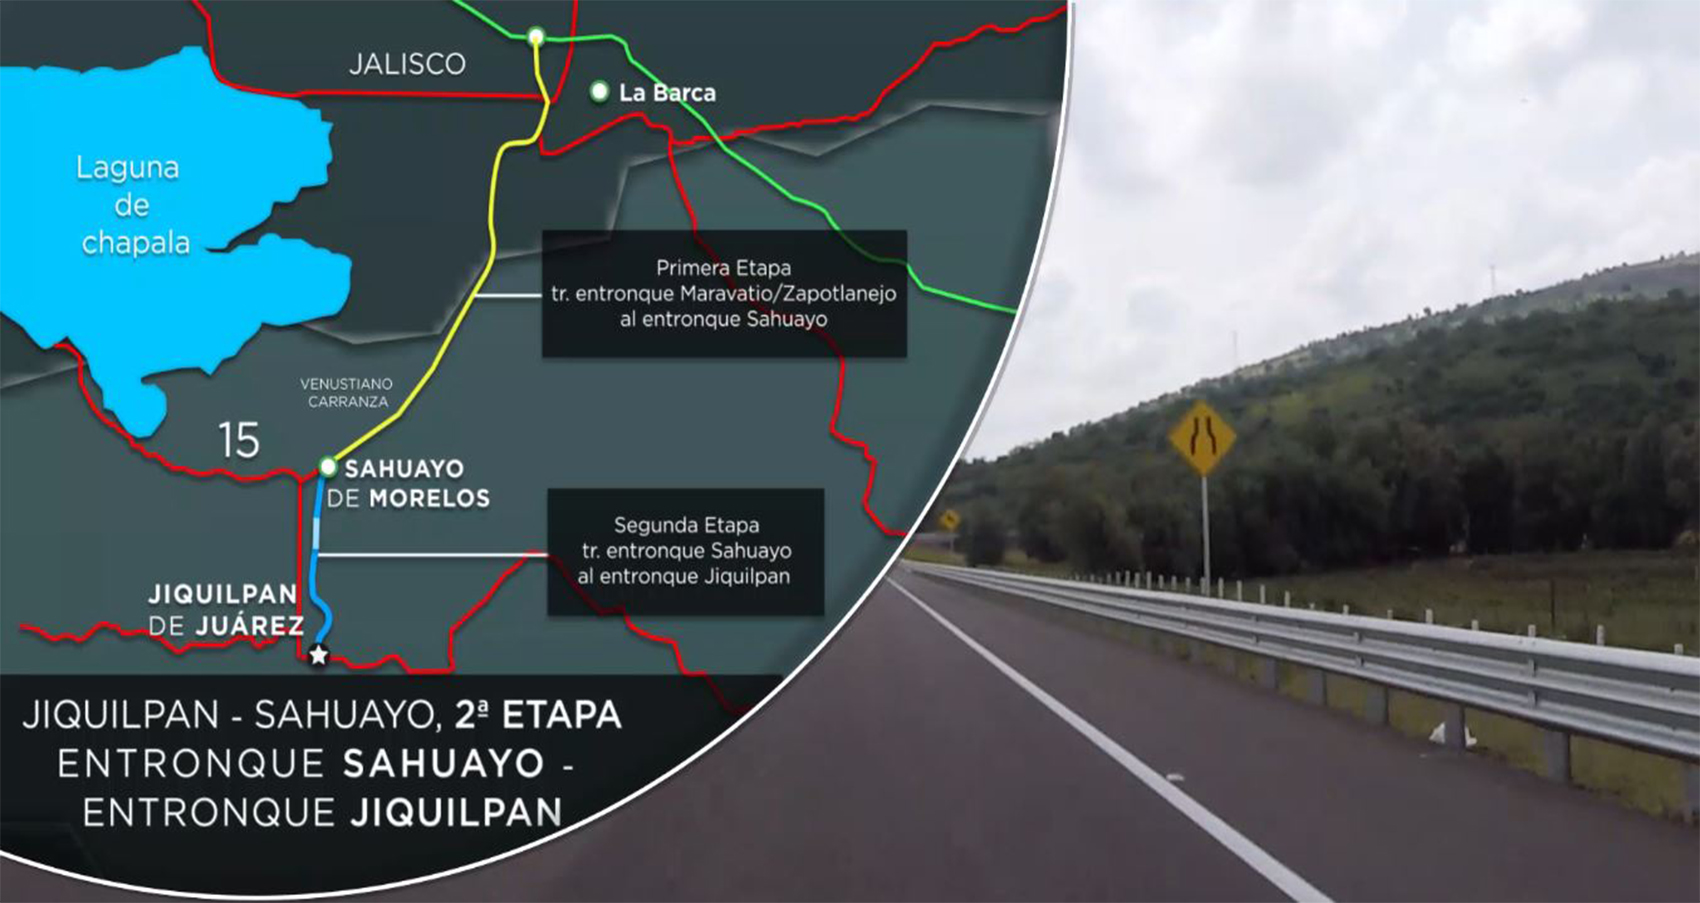 La segunda etapa de la carretera Jiquilpan-Sahuayo une a los estados de #Michoacán y #Jalisco beneficiando a los productores agrícolas, avícolas y porcinos, ubicados en ambos lados del Río Santiago.